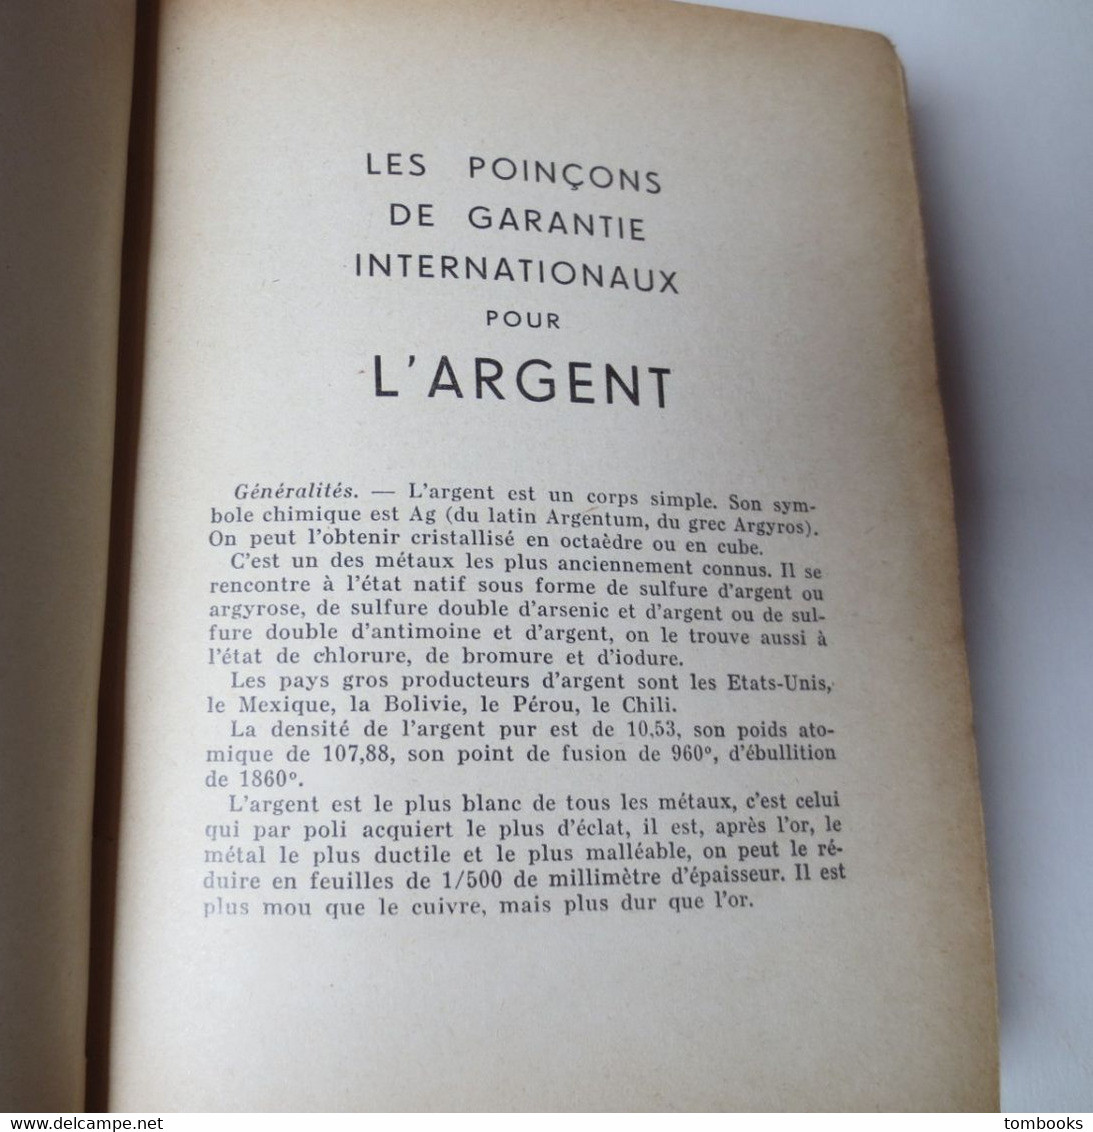 Les Poinçons De Garantie Internationaux Pour L'Argent Réunis Par Tardy - 4 Eme édition - 1951 - TBE - - Sonstige & Ohne Zuordnung